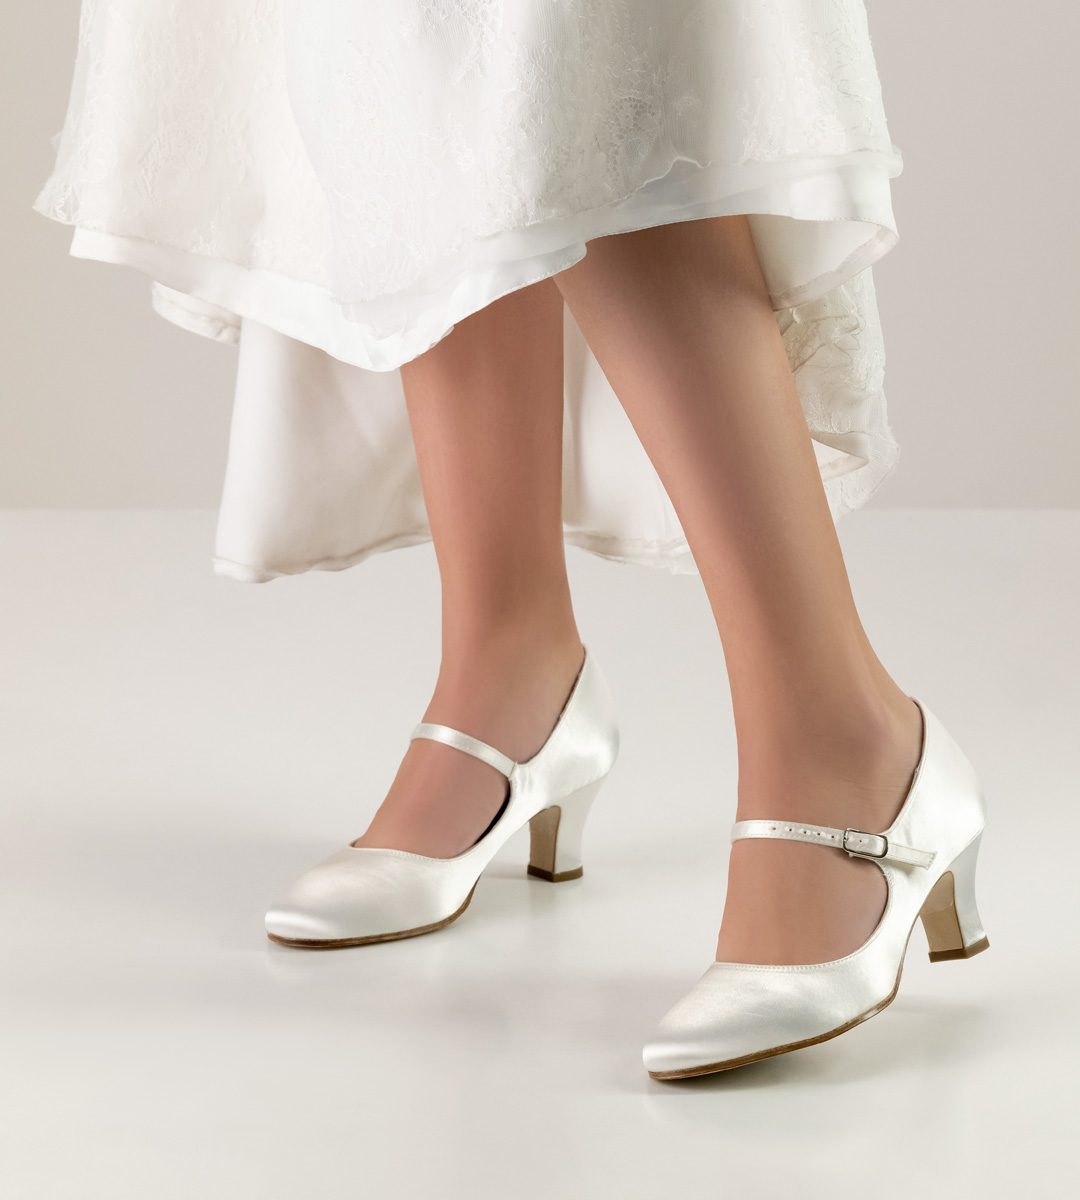 Chaussure de mariée Werner Kern avec bride de cou-de-pied en satin